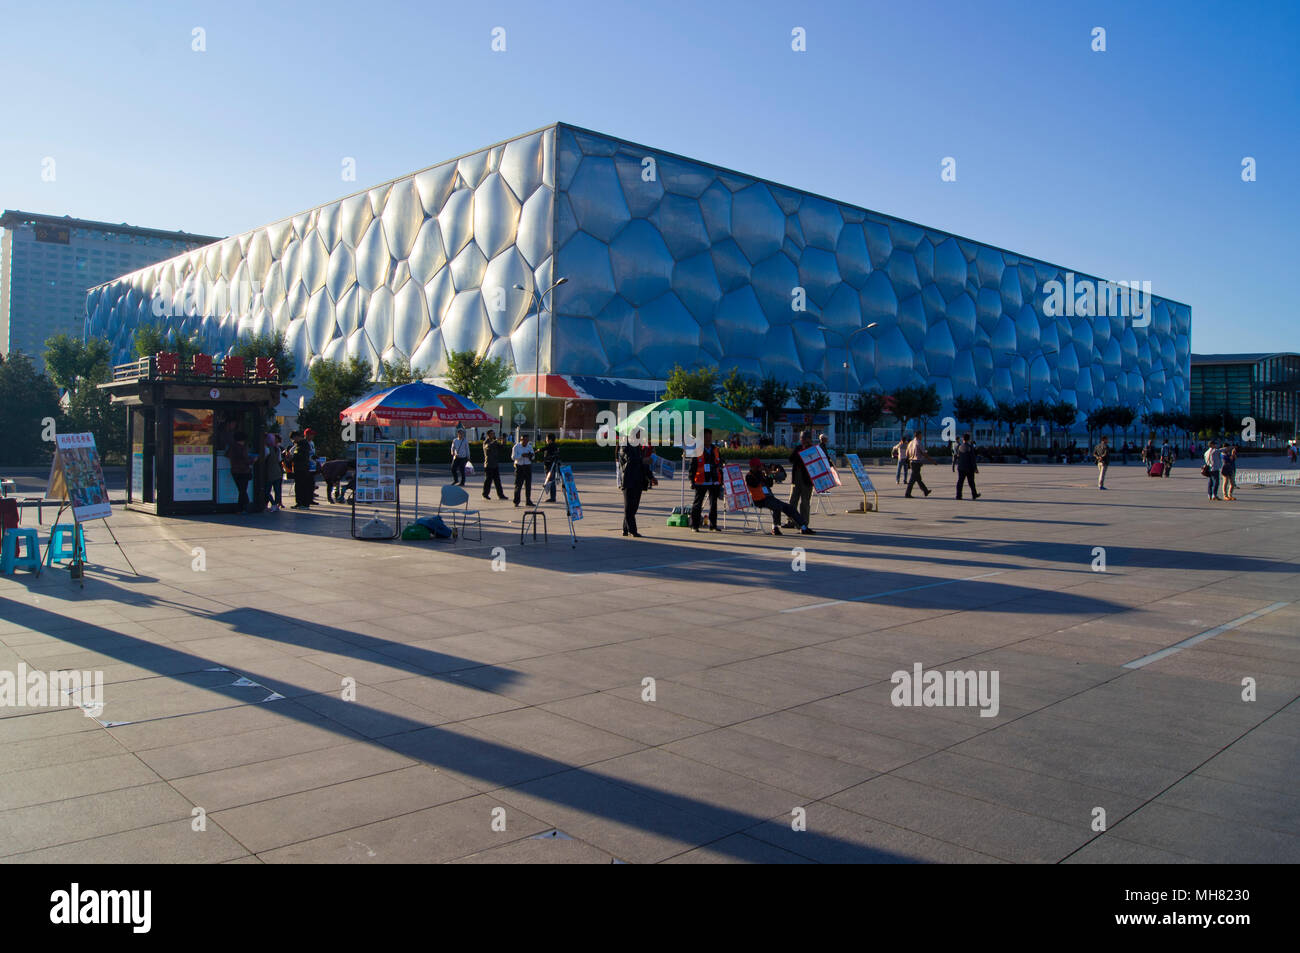 Le Centre national de natation de Pékin, appelé familièrement le Cube d'eau, dans le Parc olympique de Beijing, Chine, photographié au coucher du soleil. Banque D'Images